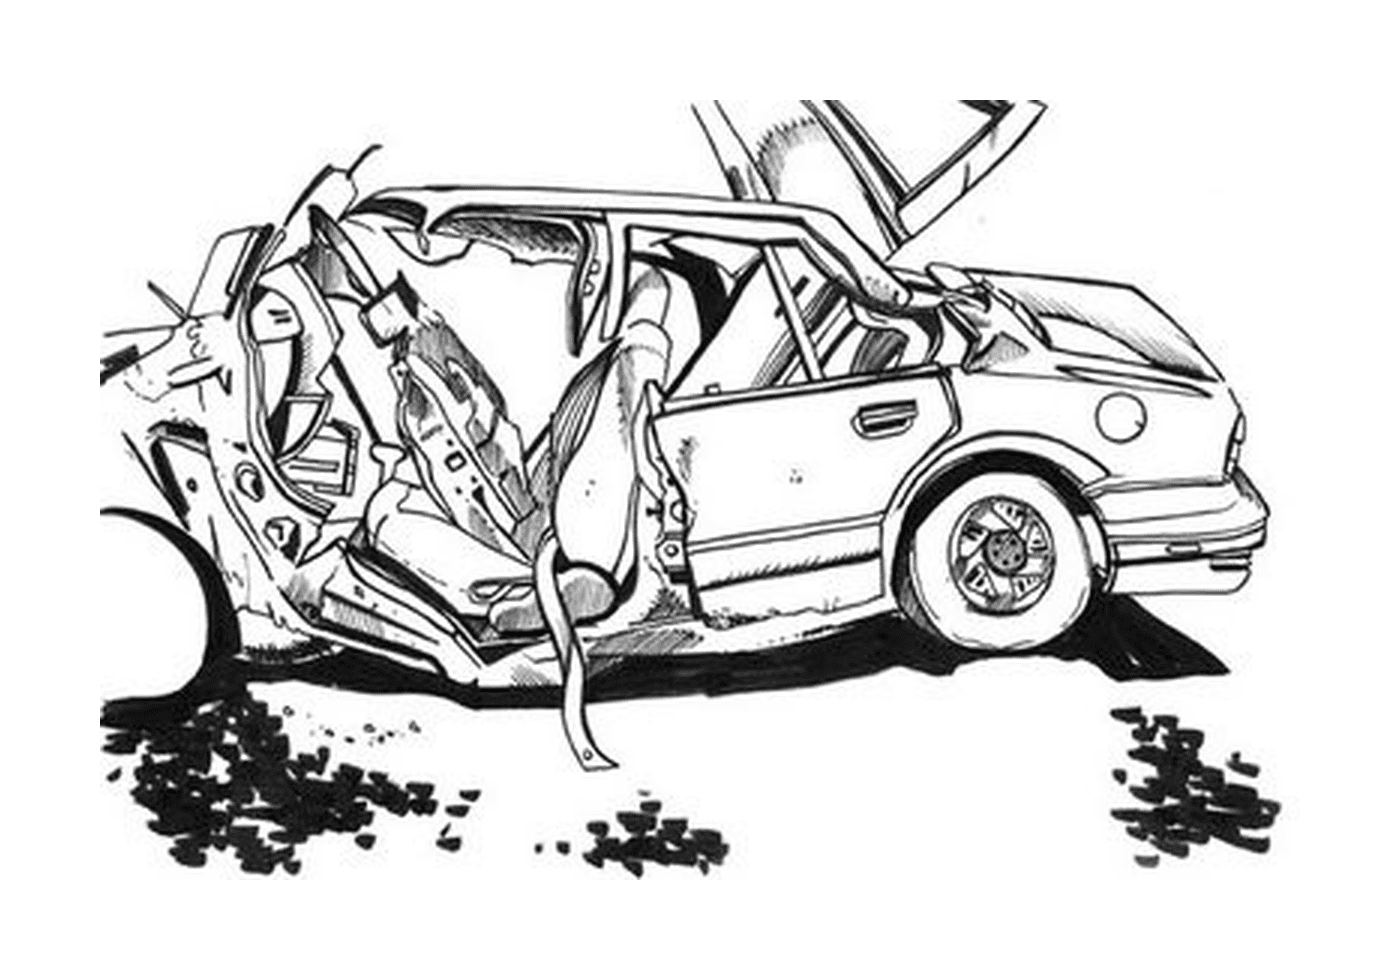  दुर्घटनाल कार छवि, कार को नष्ट कर दिया 